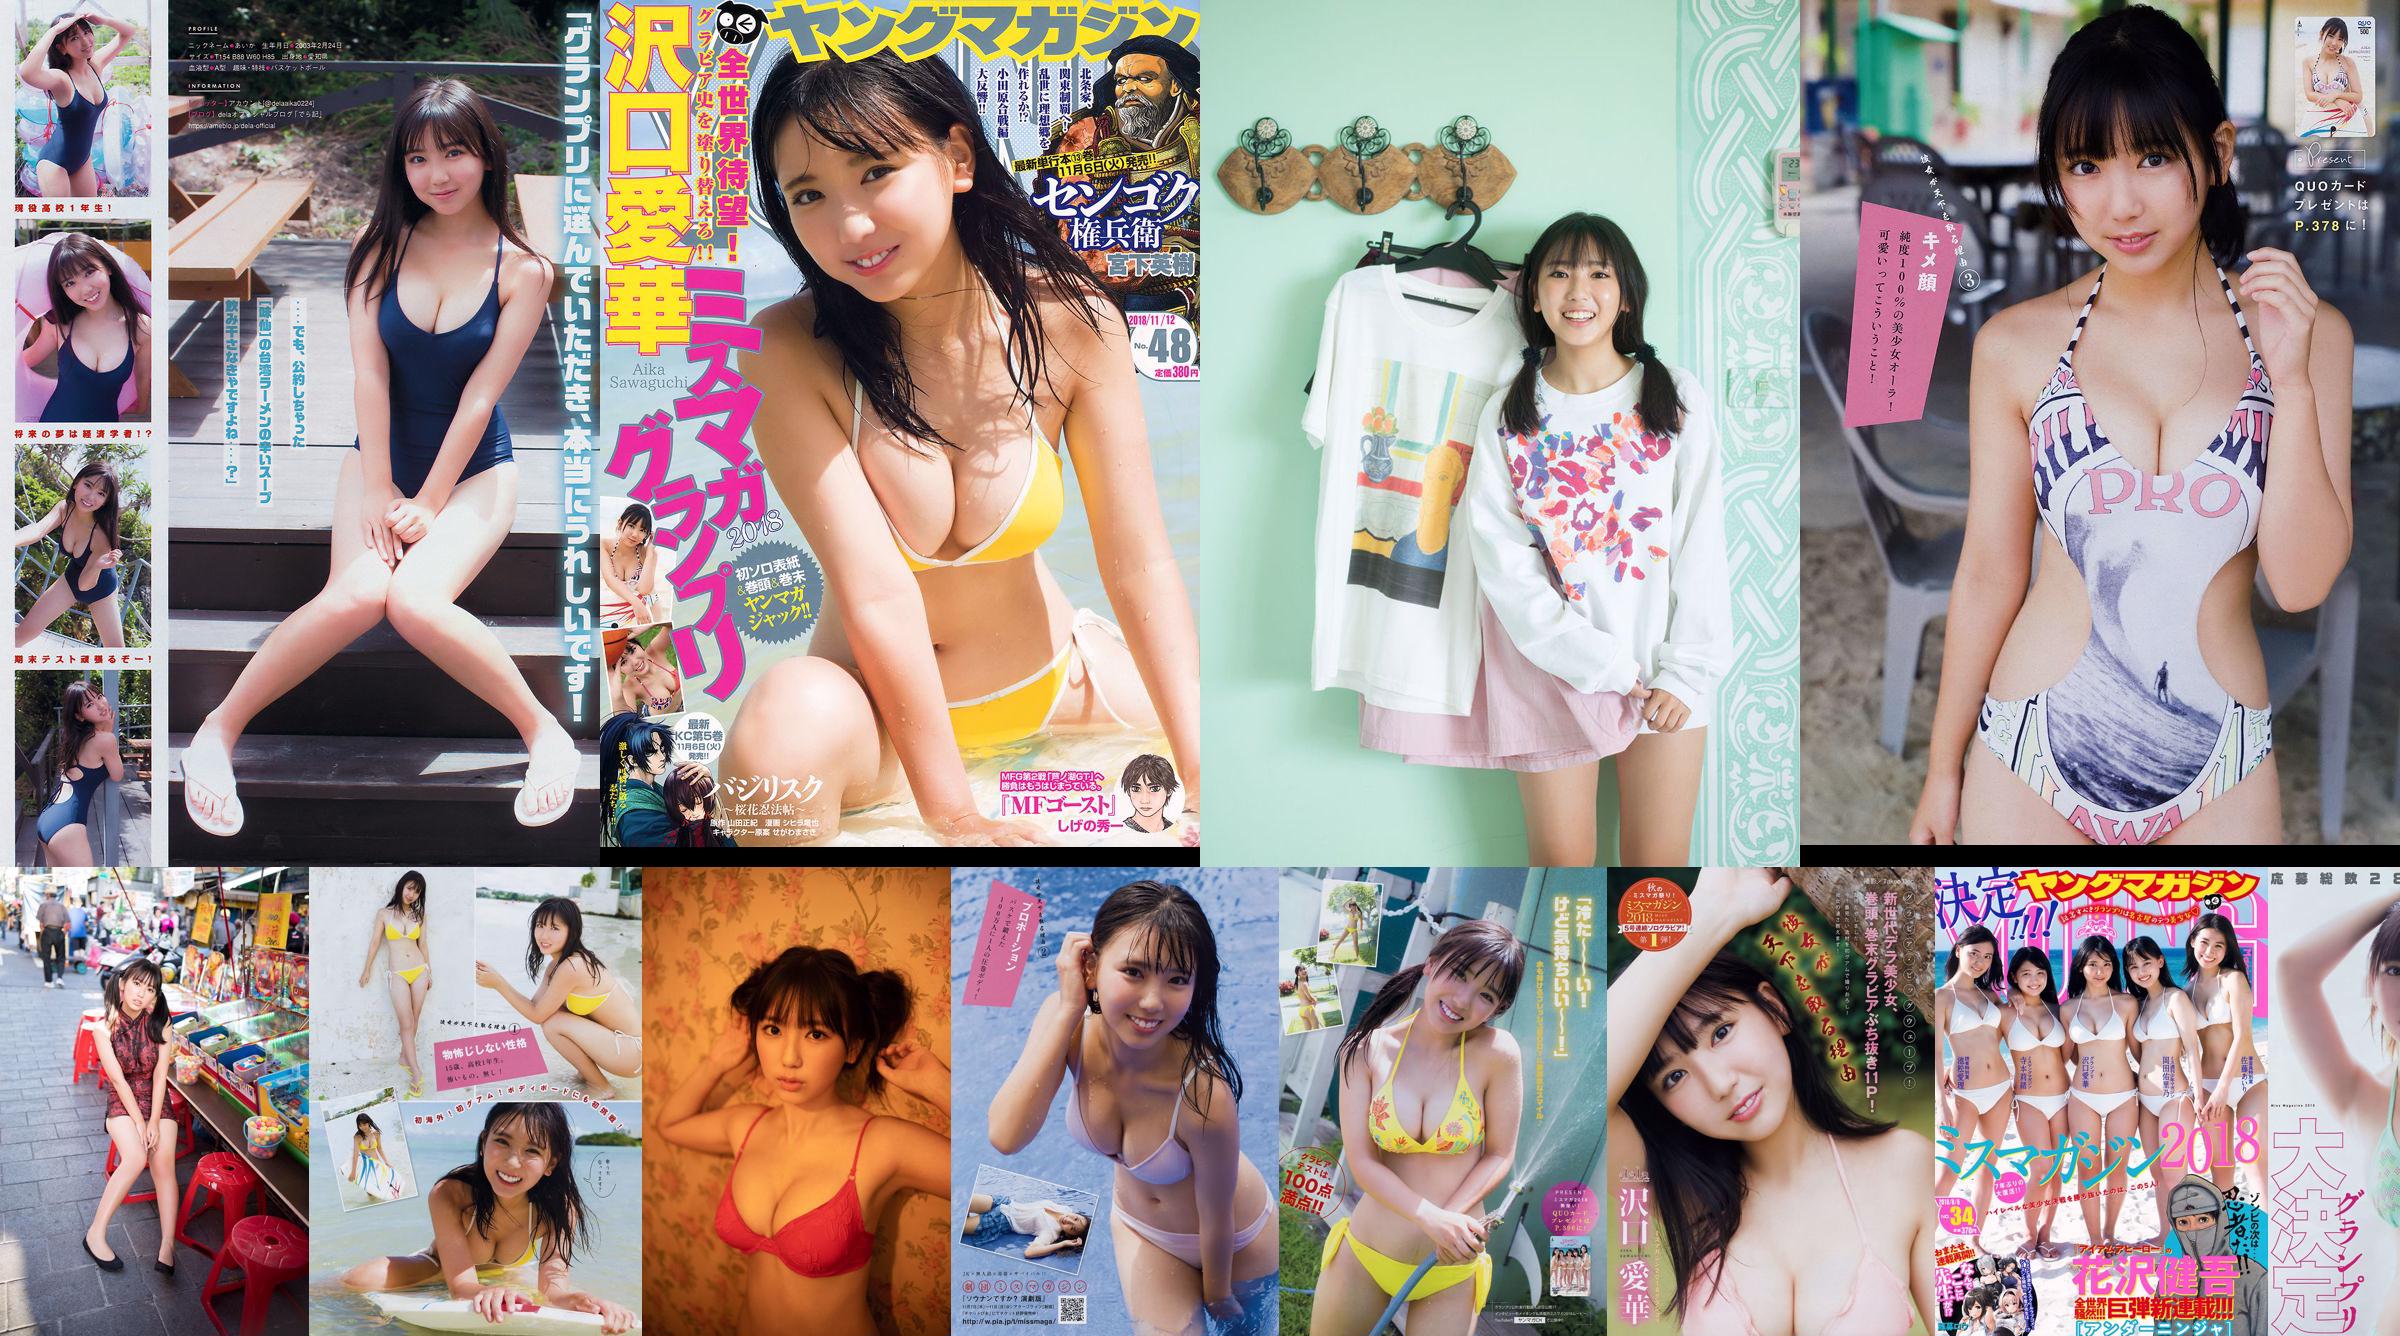 [WPB-net] No.253 Aika Sawaguchi 沢口愛華 – Starting Line スタートライン No.a7542d 第1頁